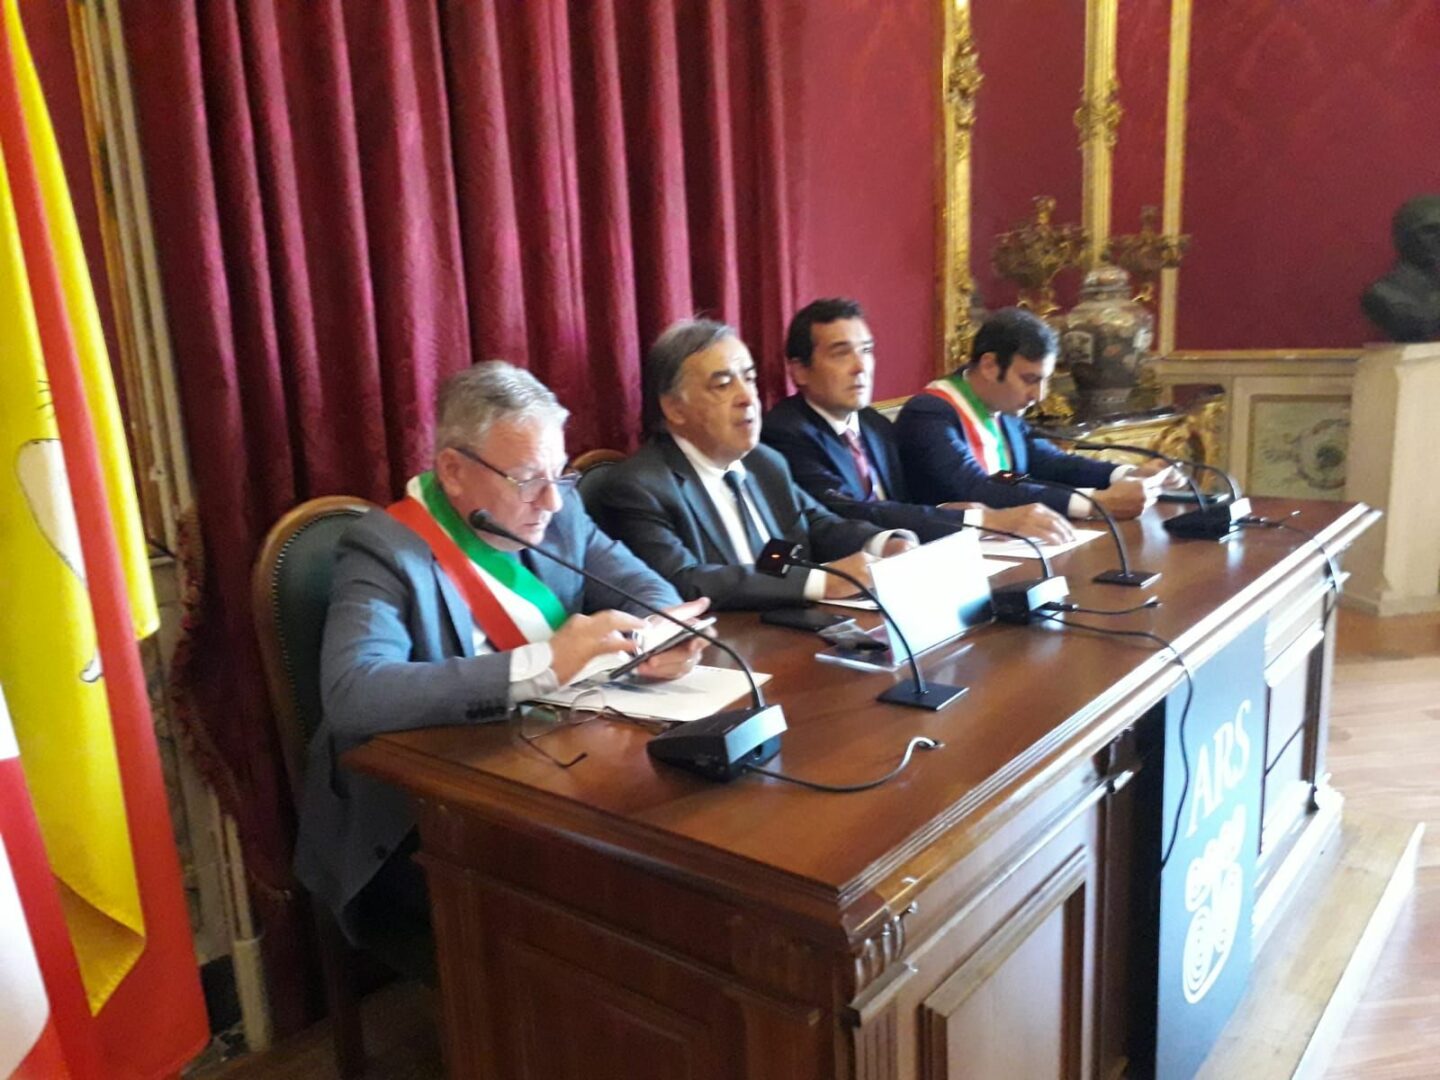 Allarme dell’Anci Sicilia “Comuni al collasso”, appello ai candidati regionali e nazionali